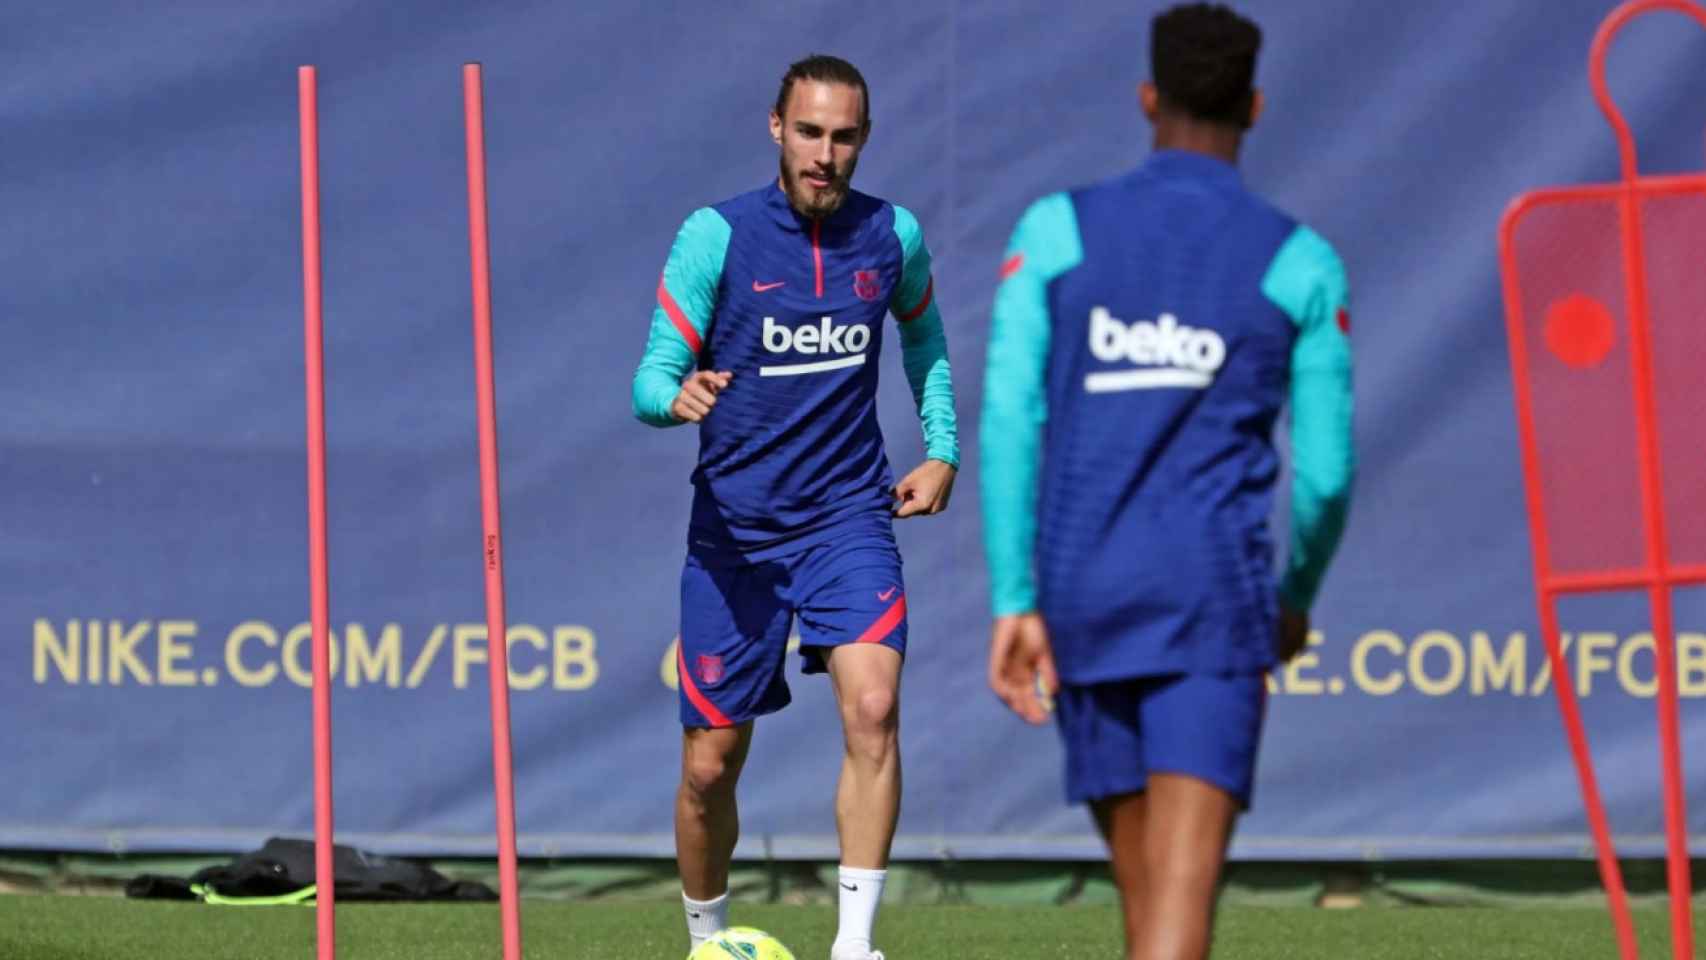 Mingueza en un entrenamiento con el Barça / FC Barcelona